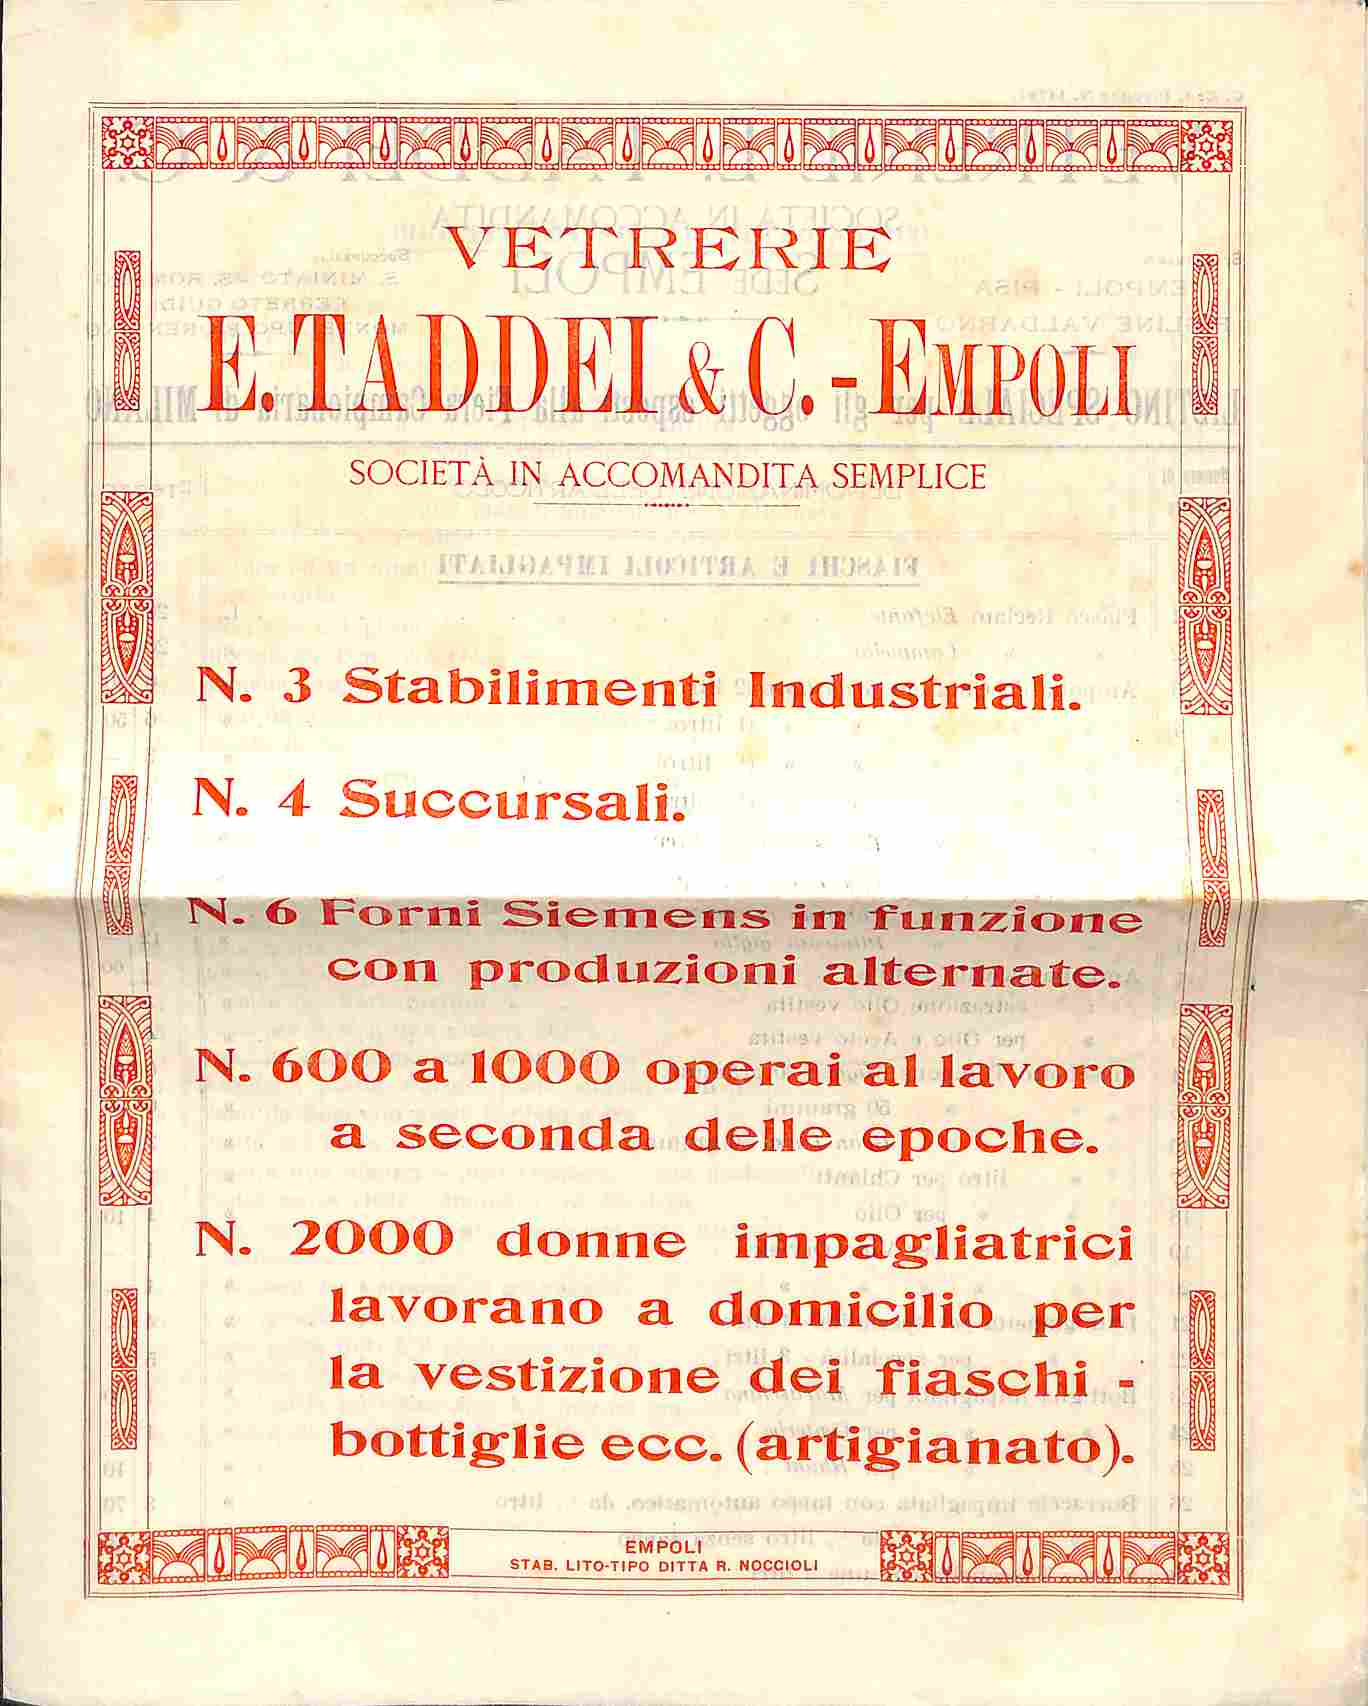 Vetrerie E. Taddei & C. - Empoli. Bifoglio pubblicitario